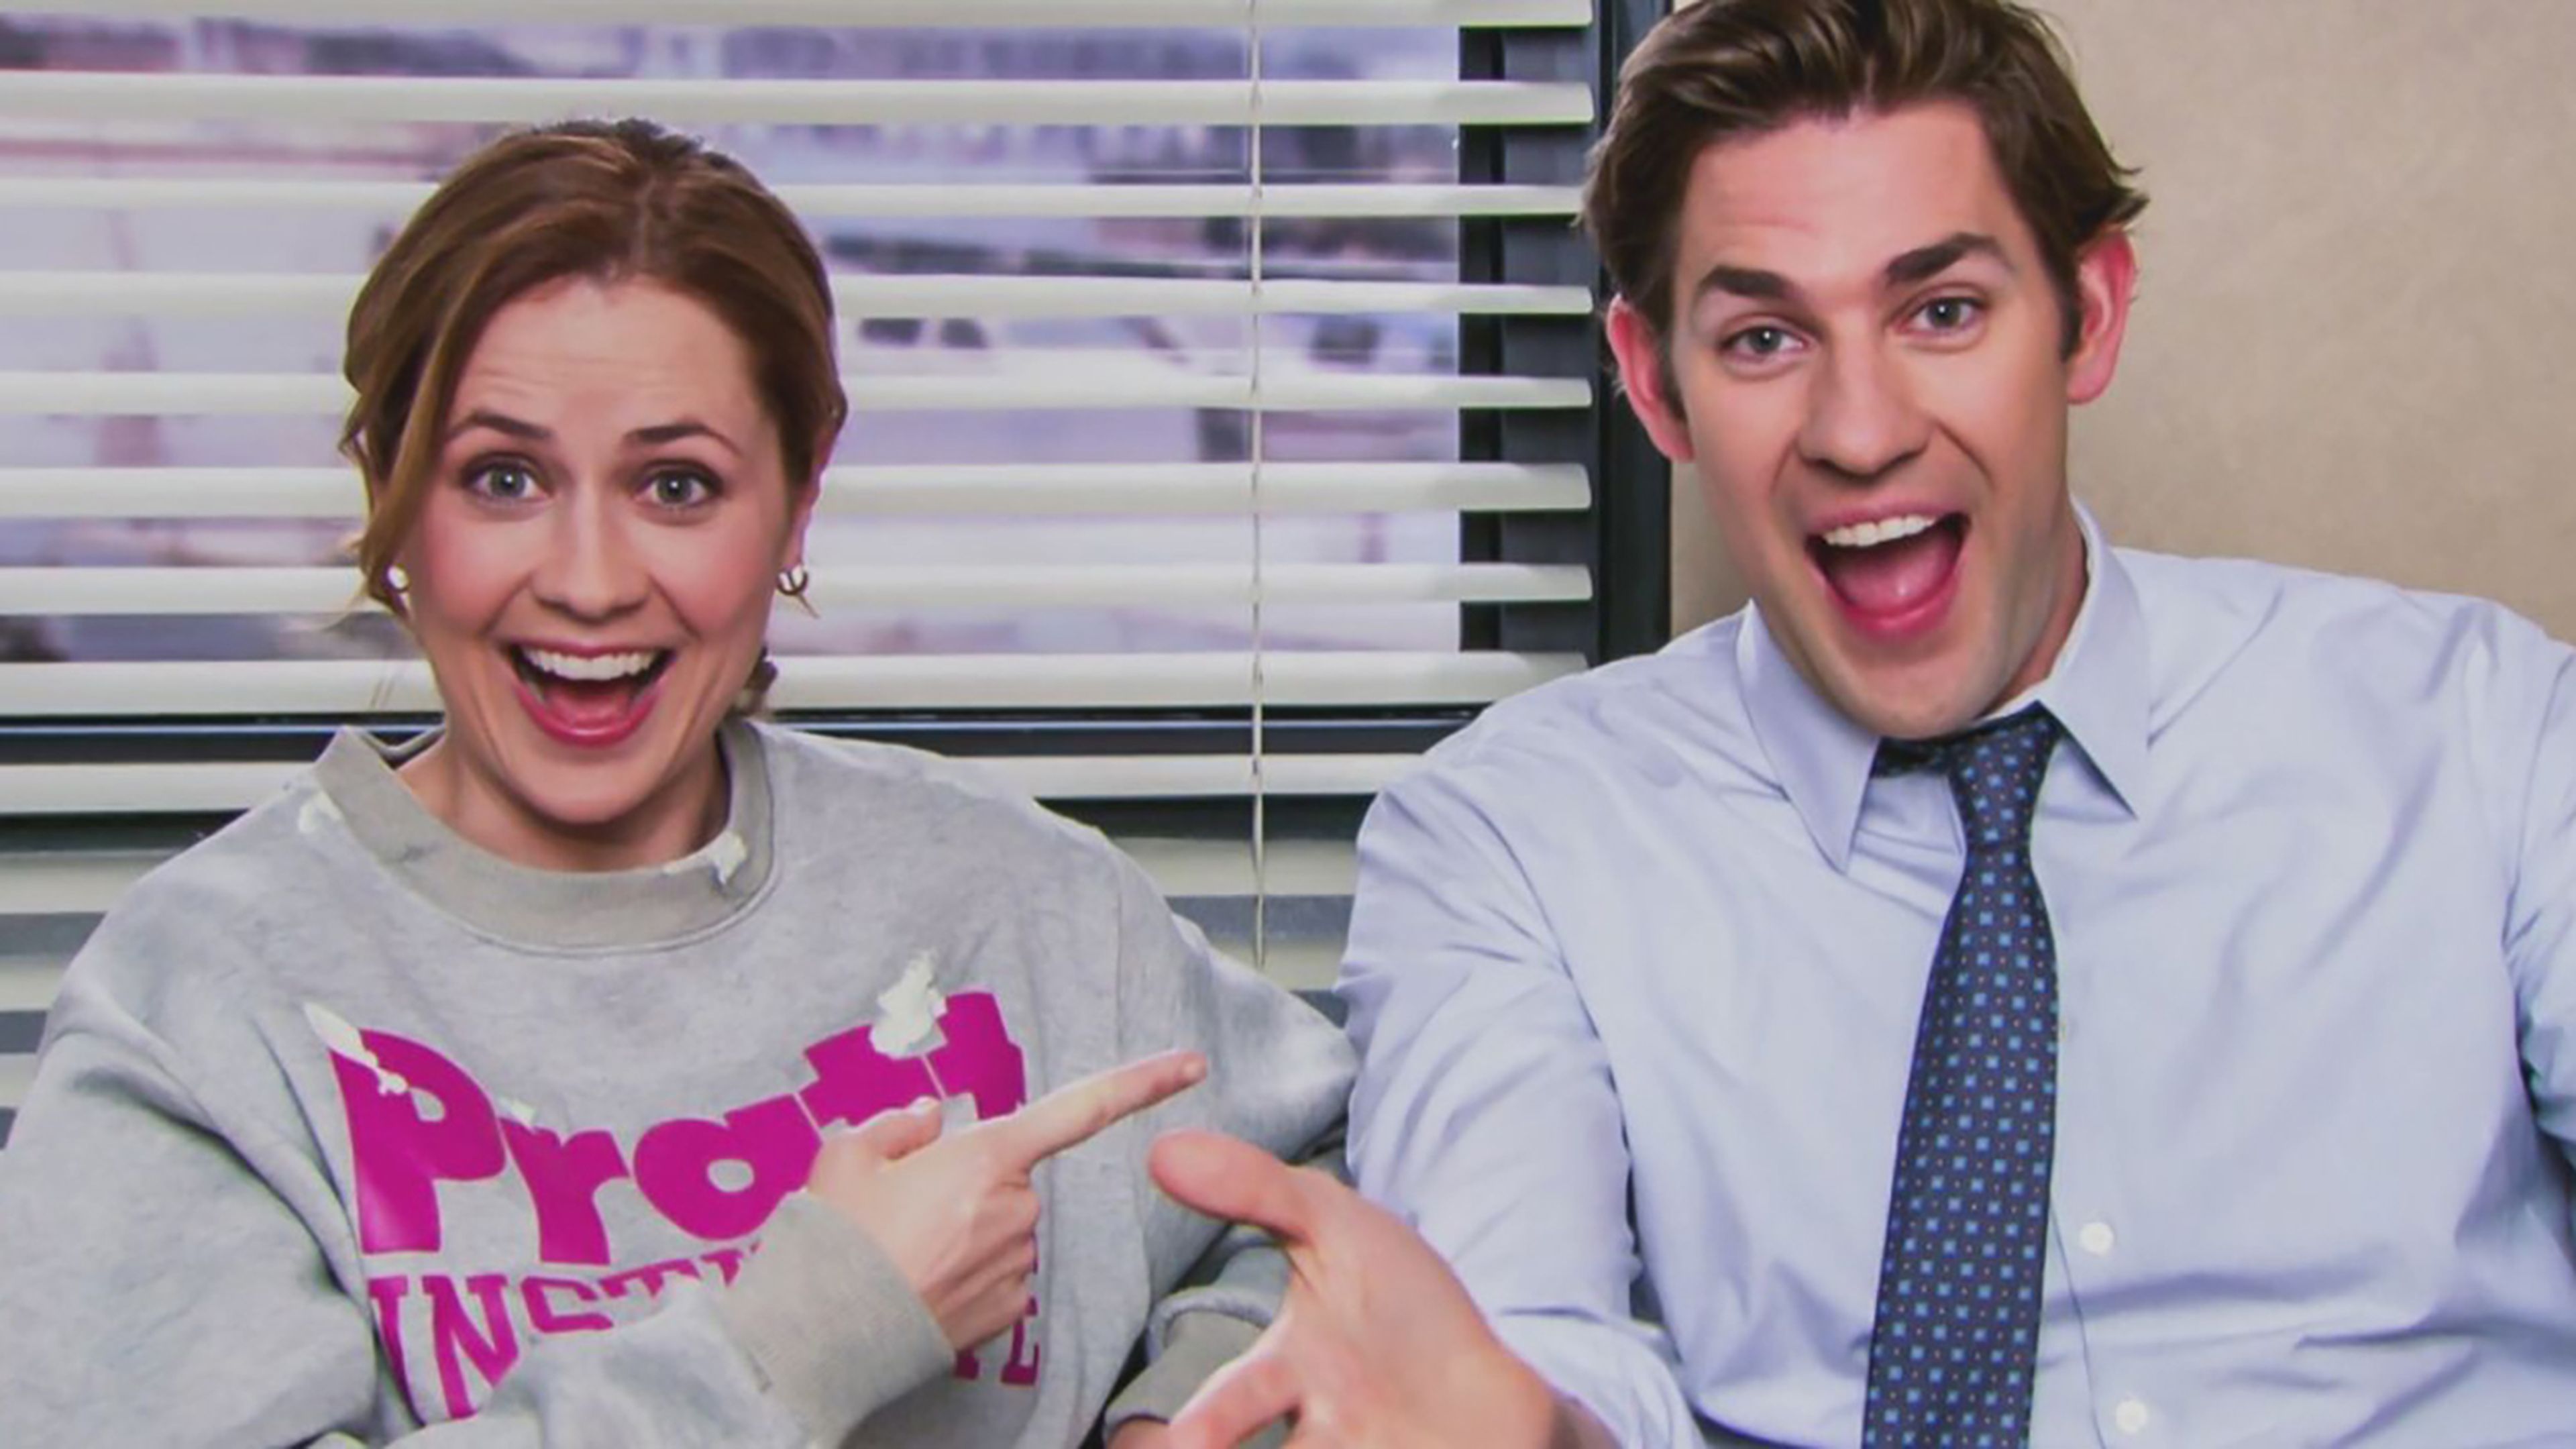 Pam y Jim en The Office (TV)